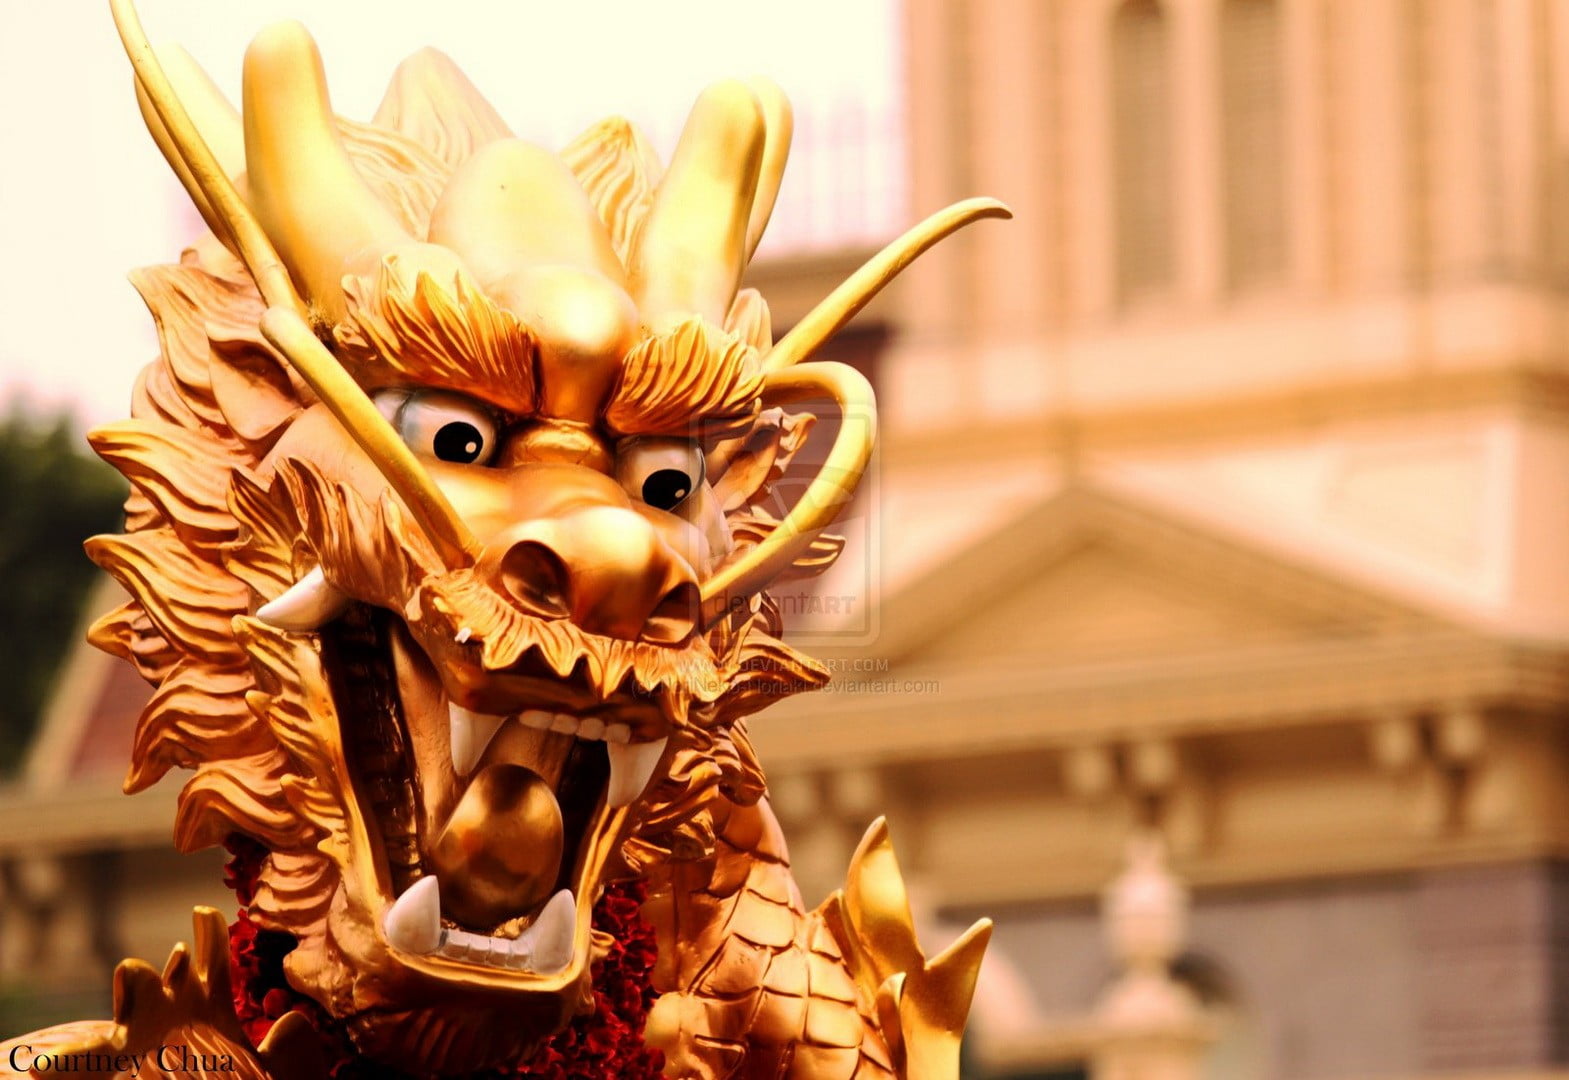 gold-colored dragon statue, chinese dragon, dragon, statue, culture